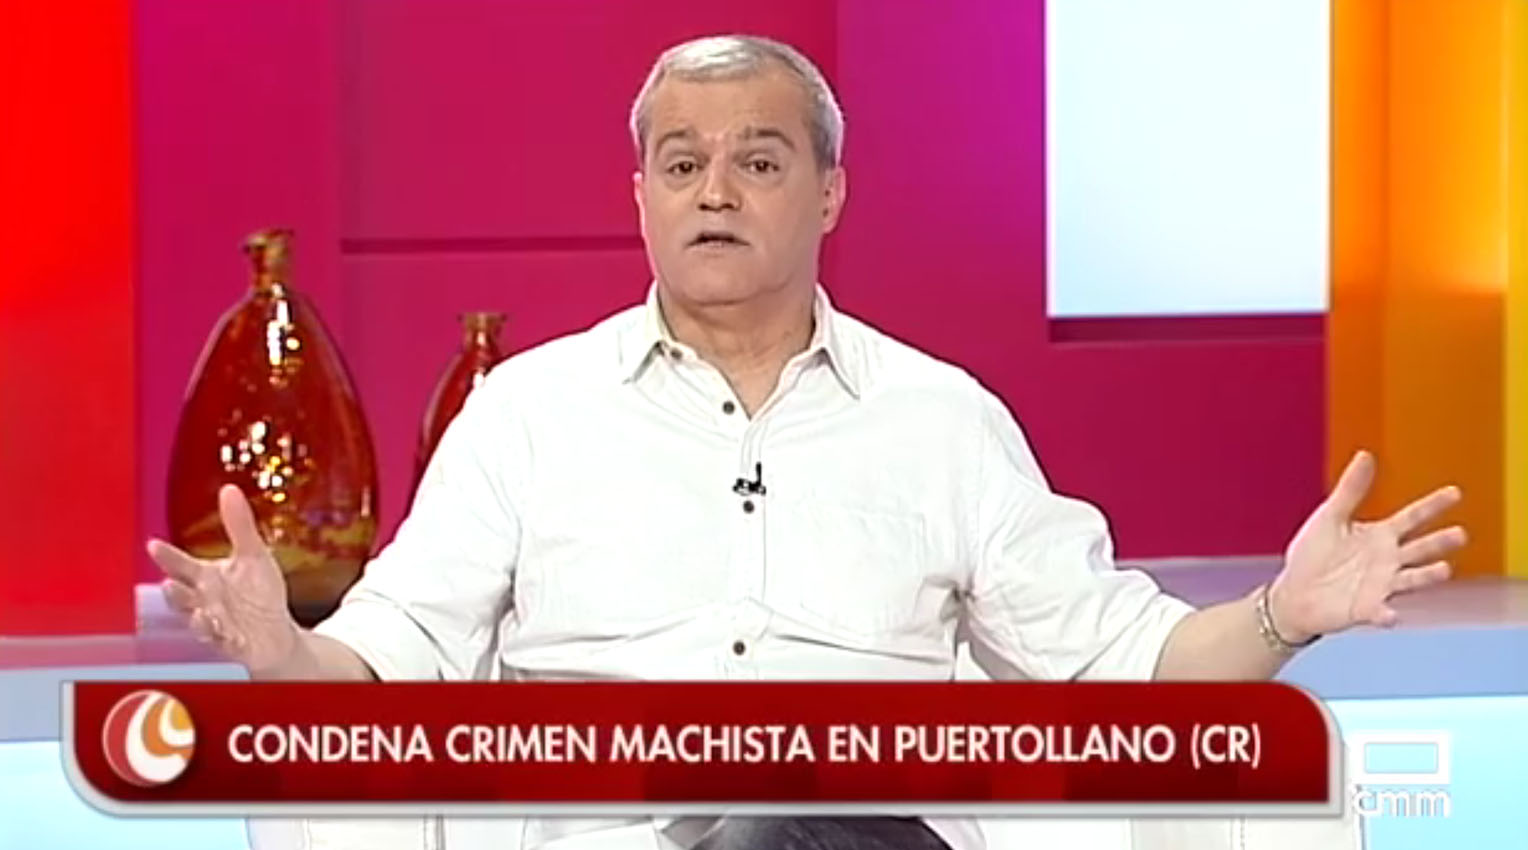 Ramón García el pasado lunes, cuando habló del crimen de Puertollano.